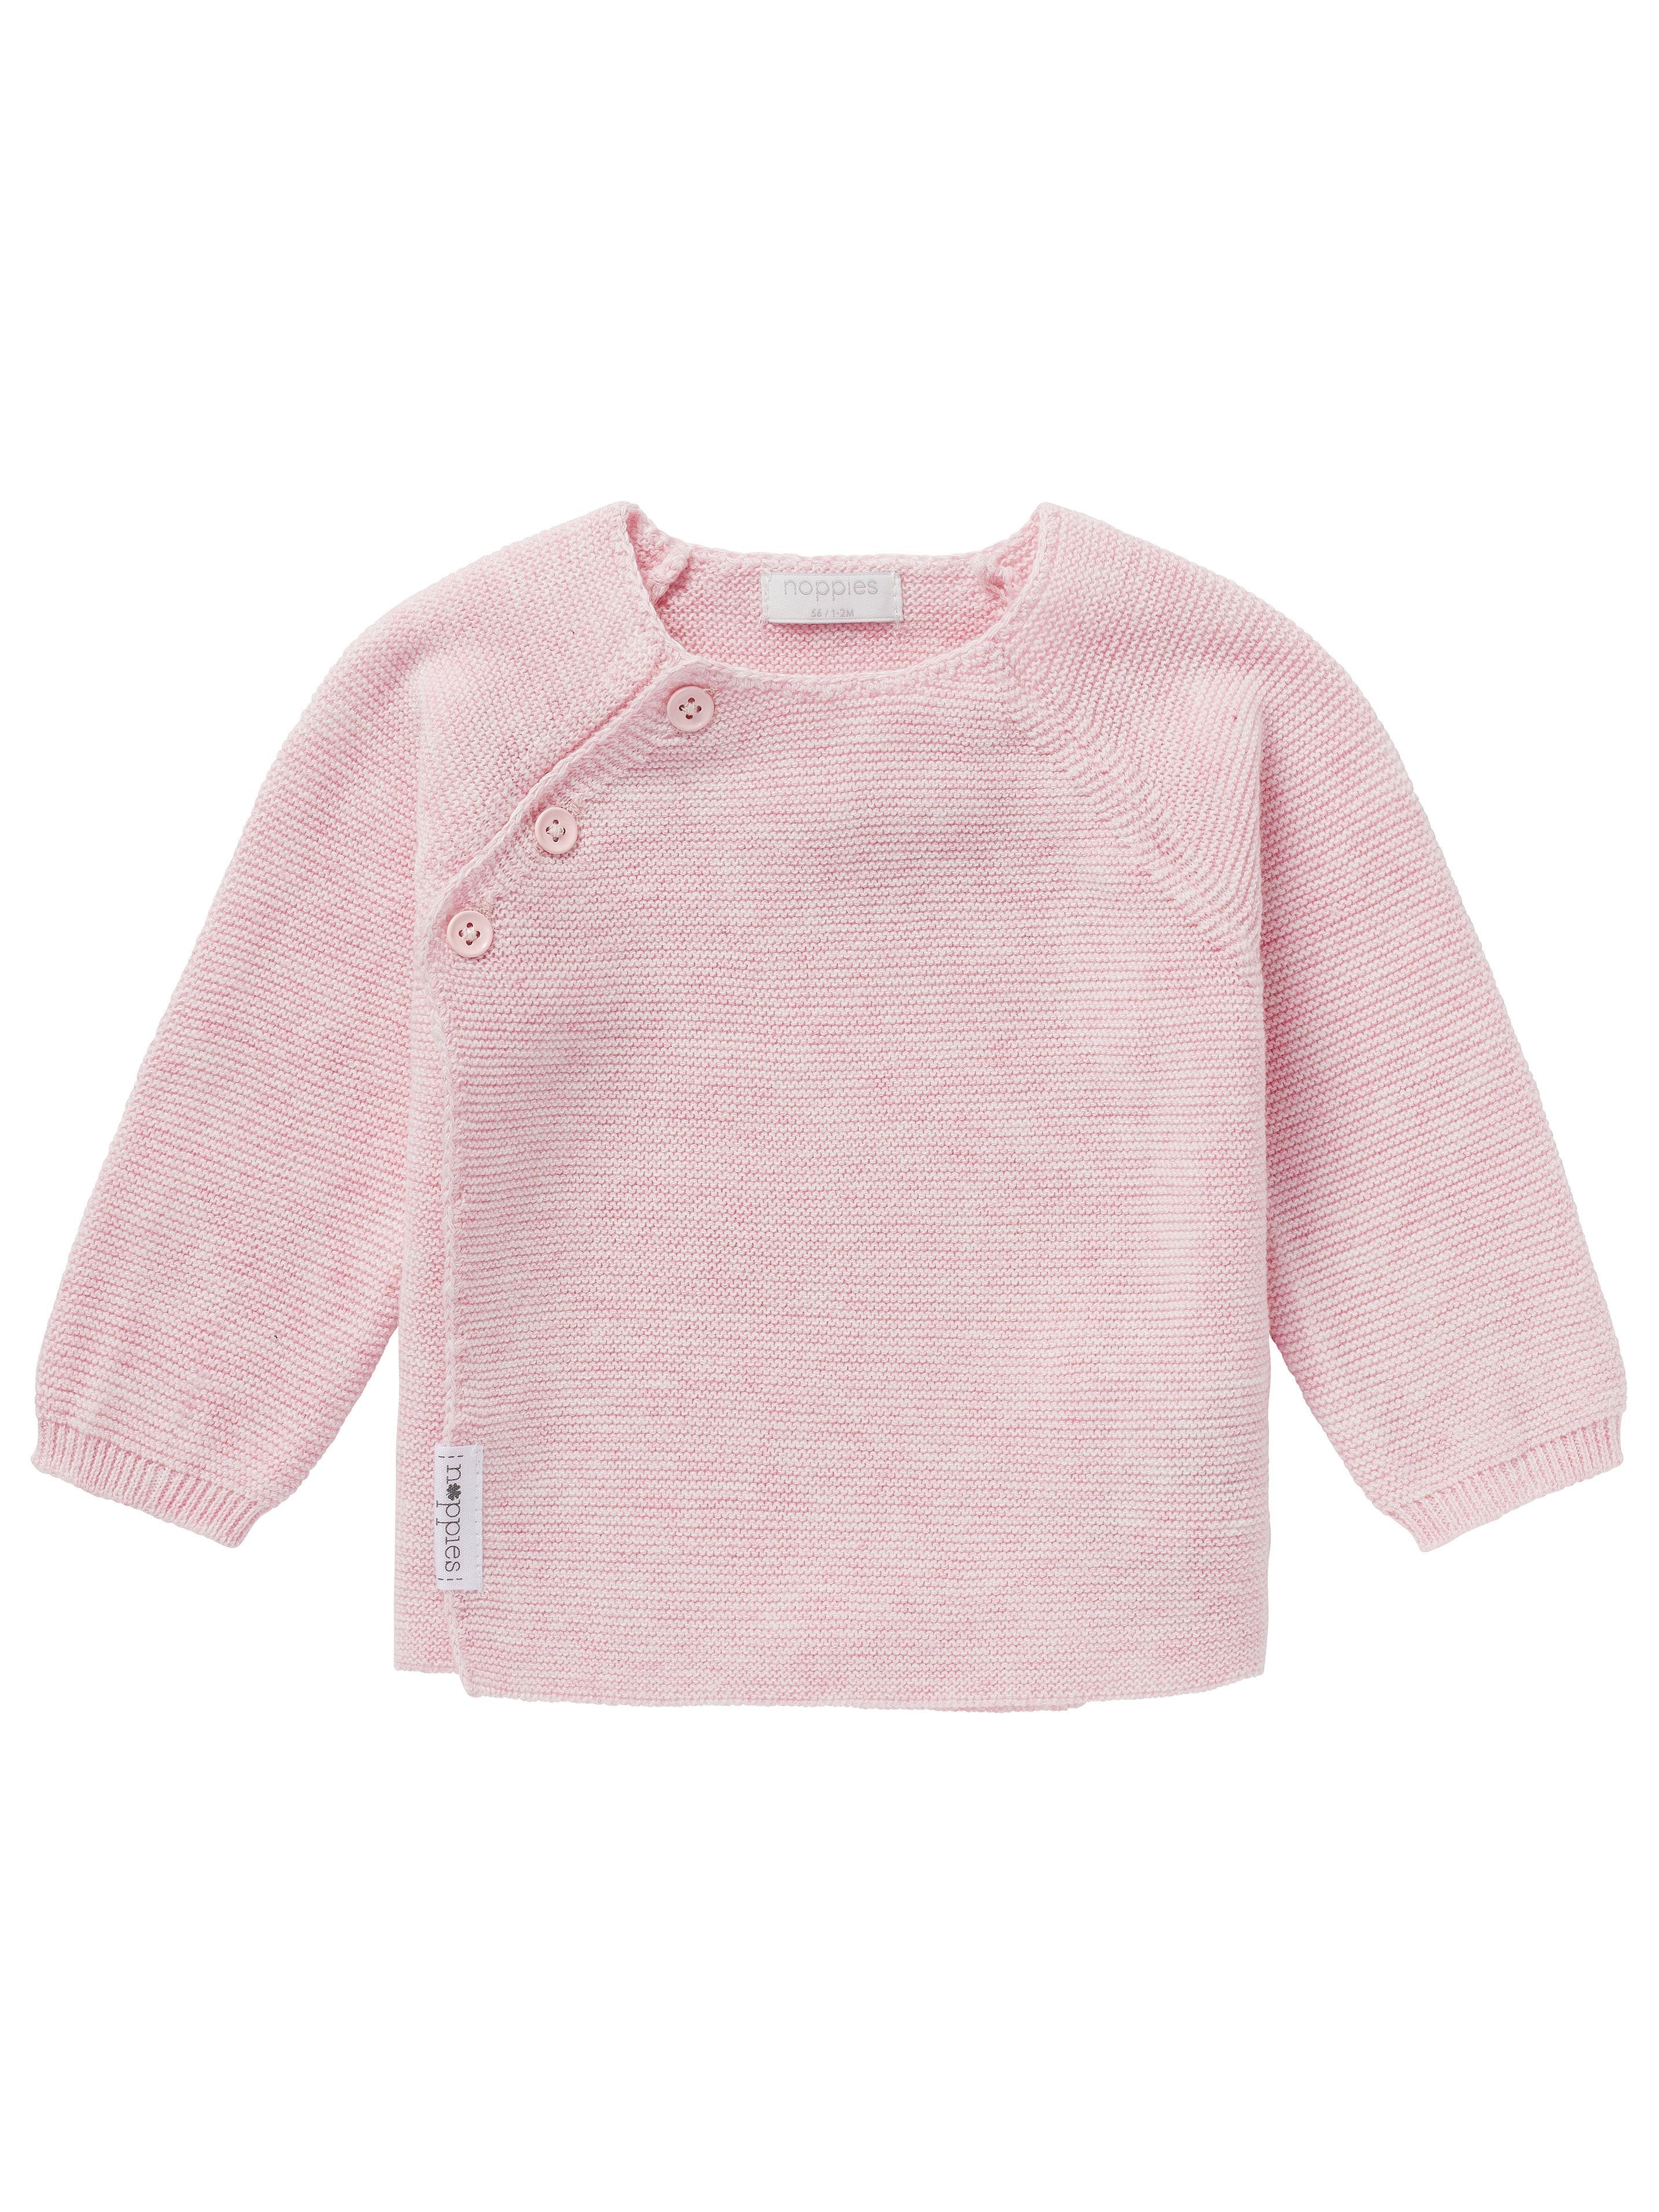 Organic Cotton Knitted Cardigan - Pink - Cardigan / Jacket - Noppies